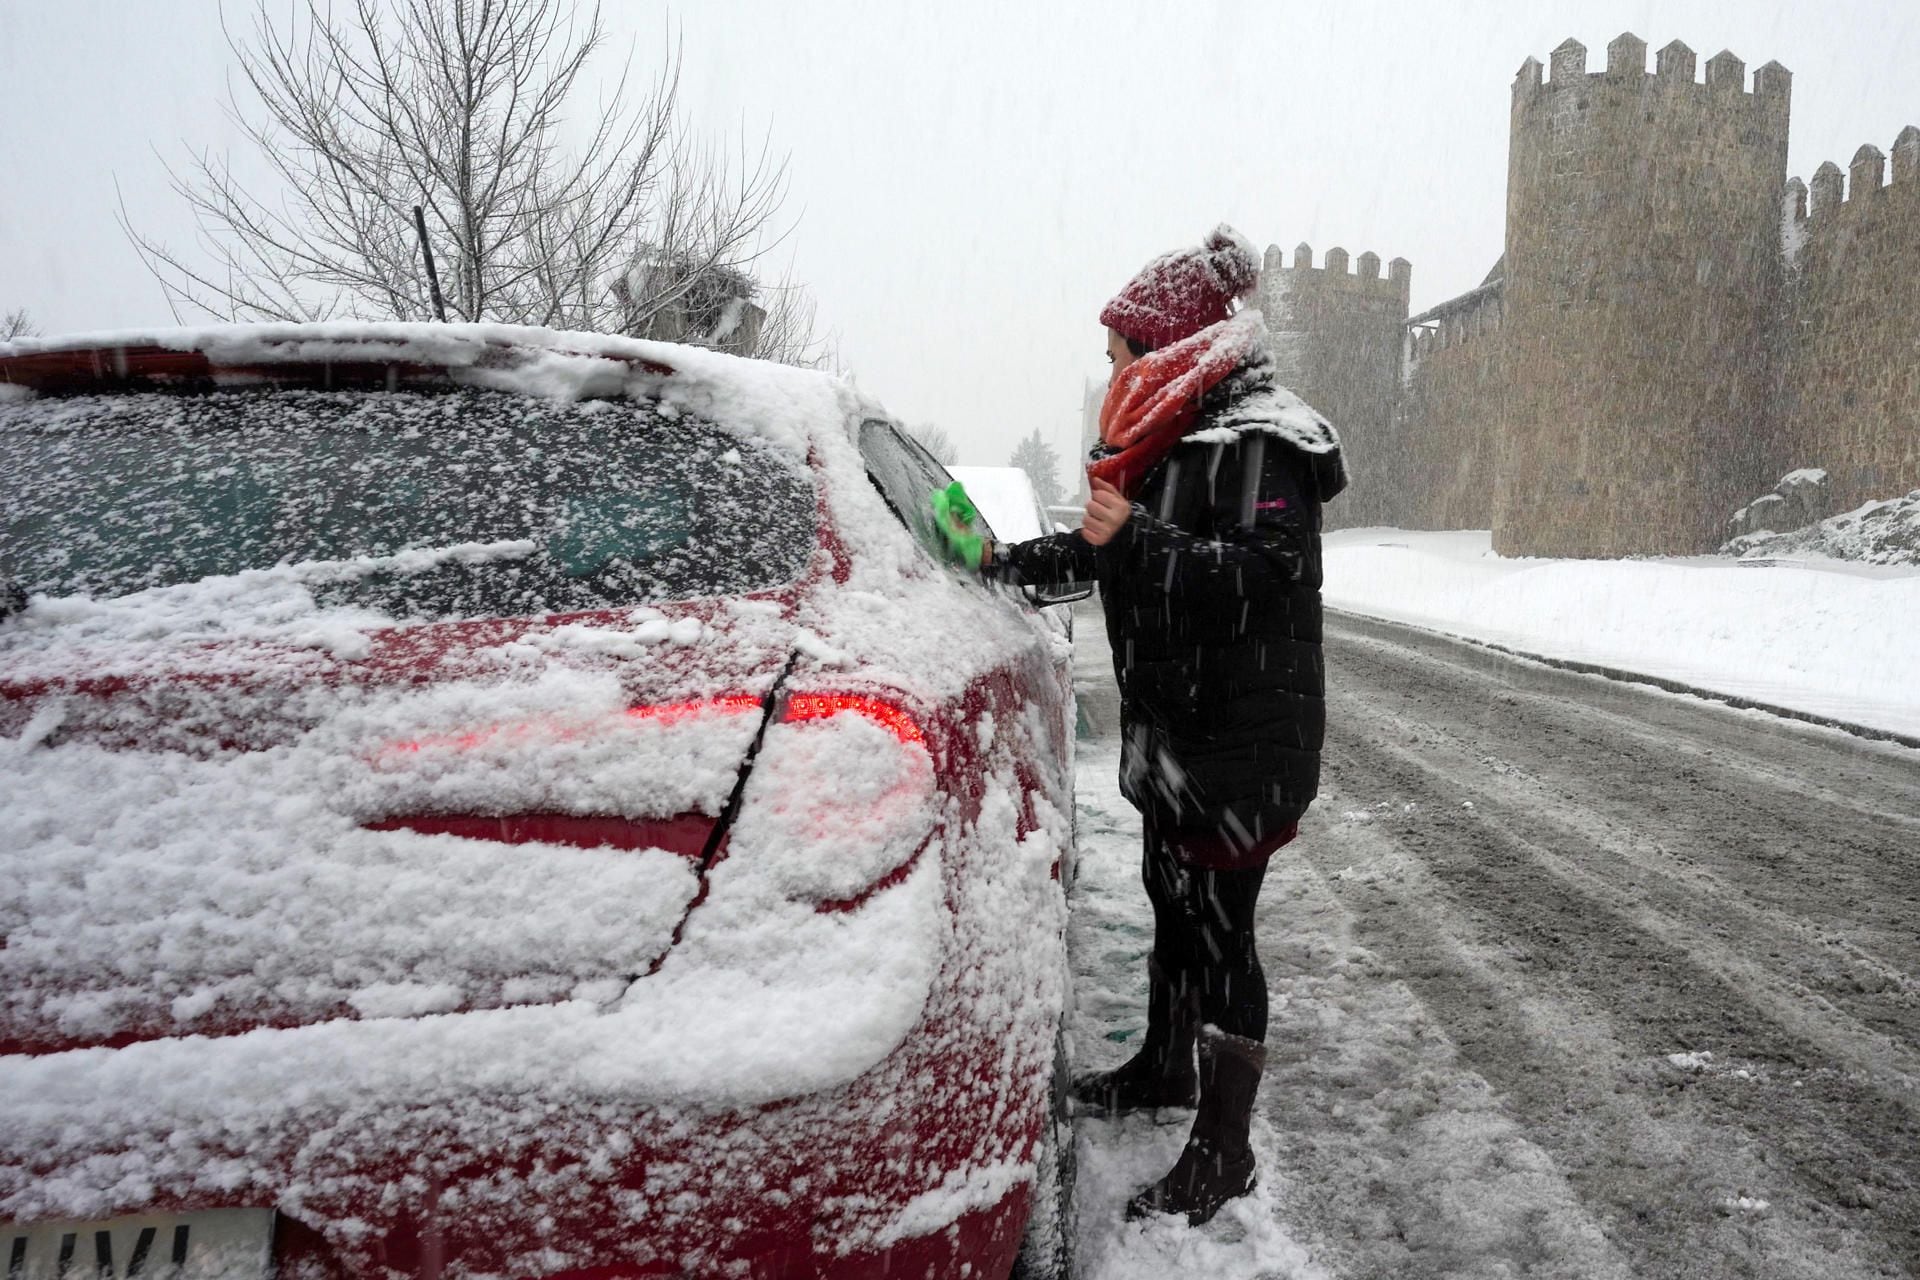 Una persona limpia los cristales de su coche nevado este sábado en Ávila. (EFE/Raúl Sanchidrián)